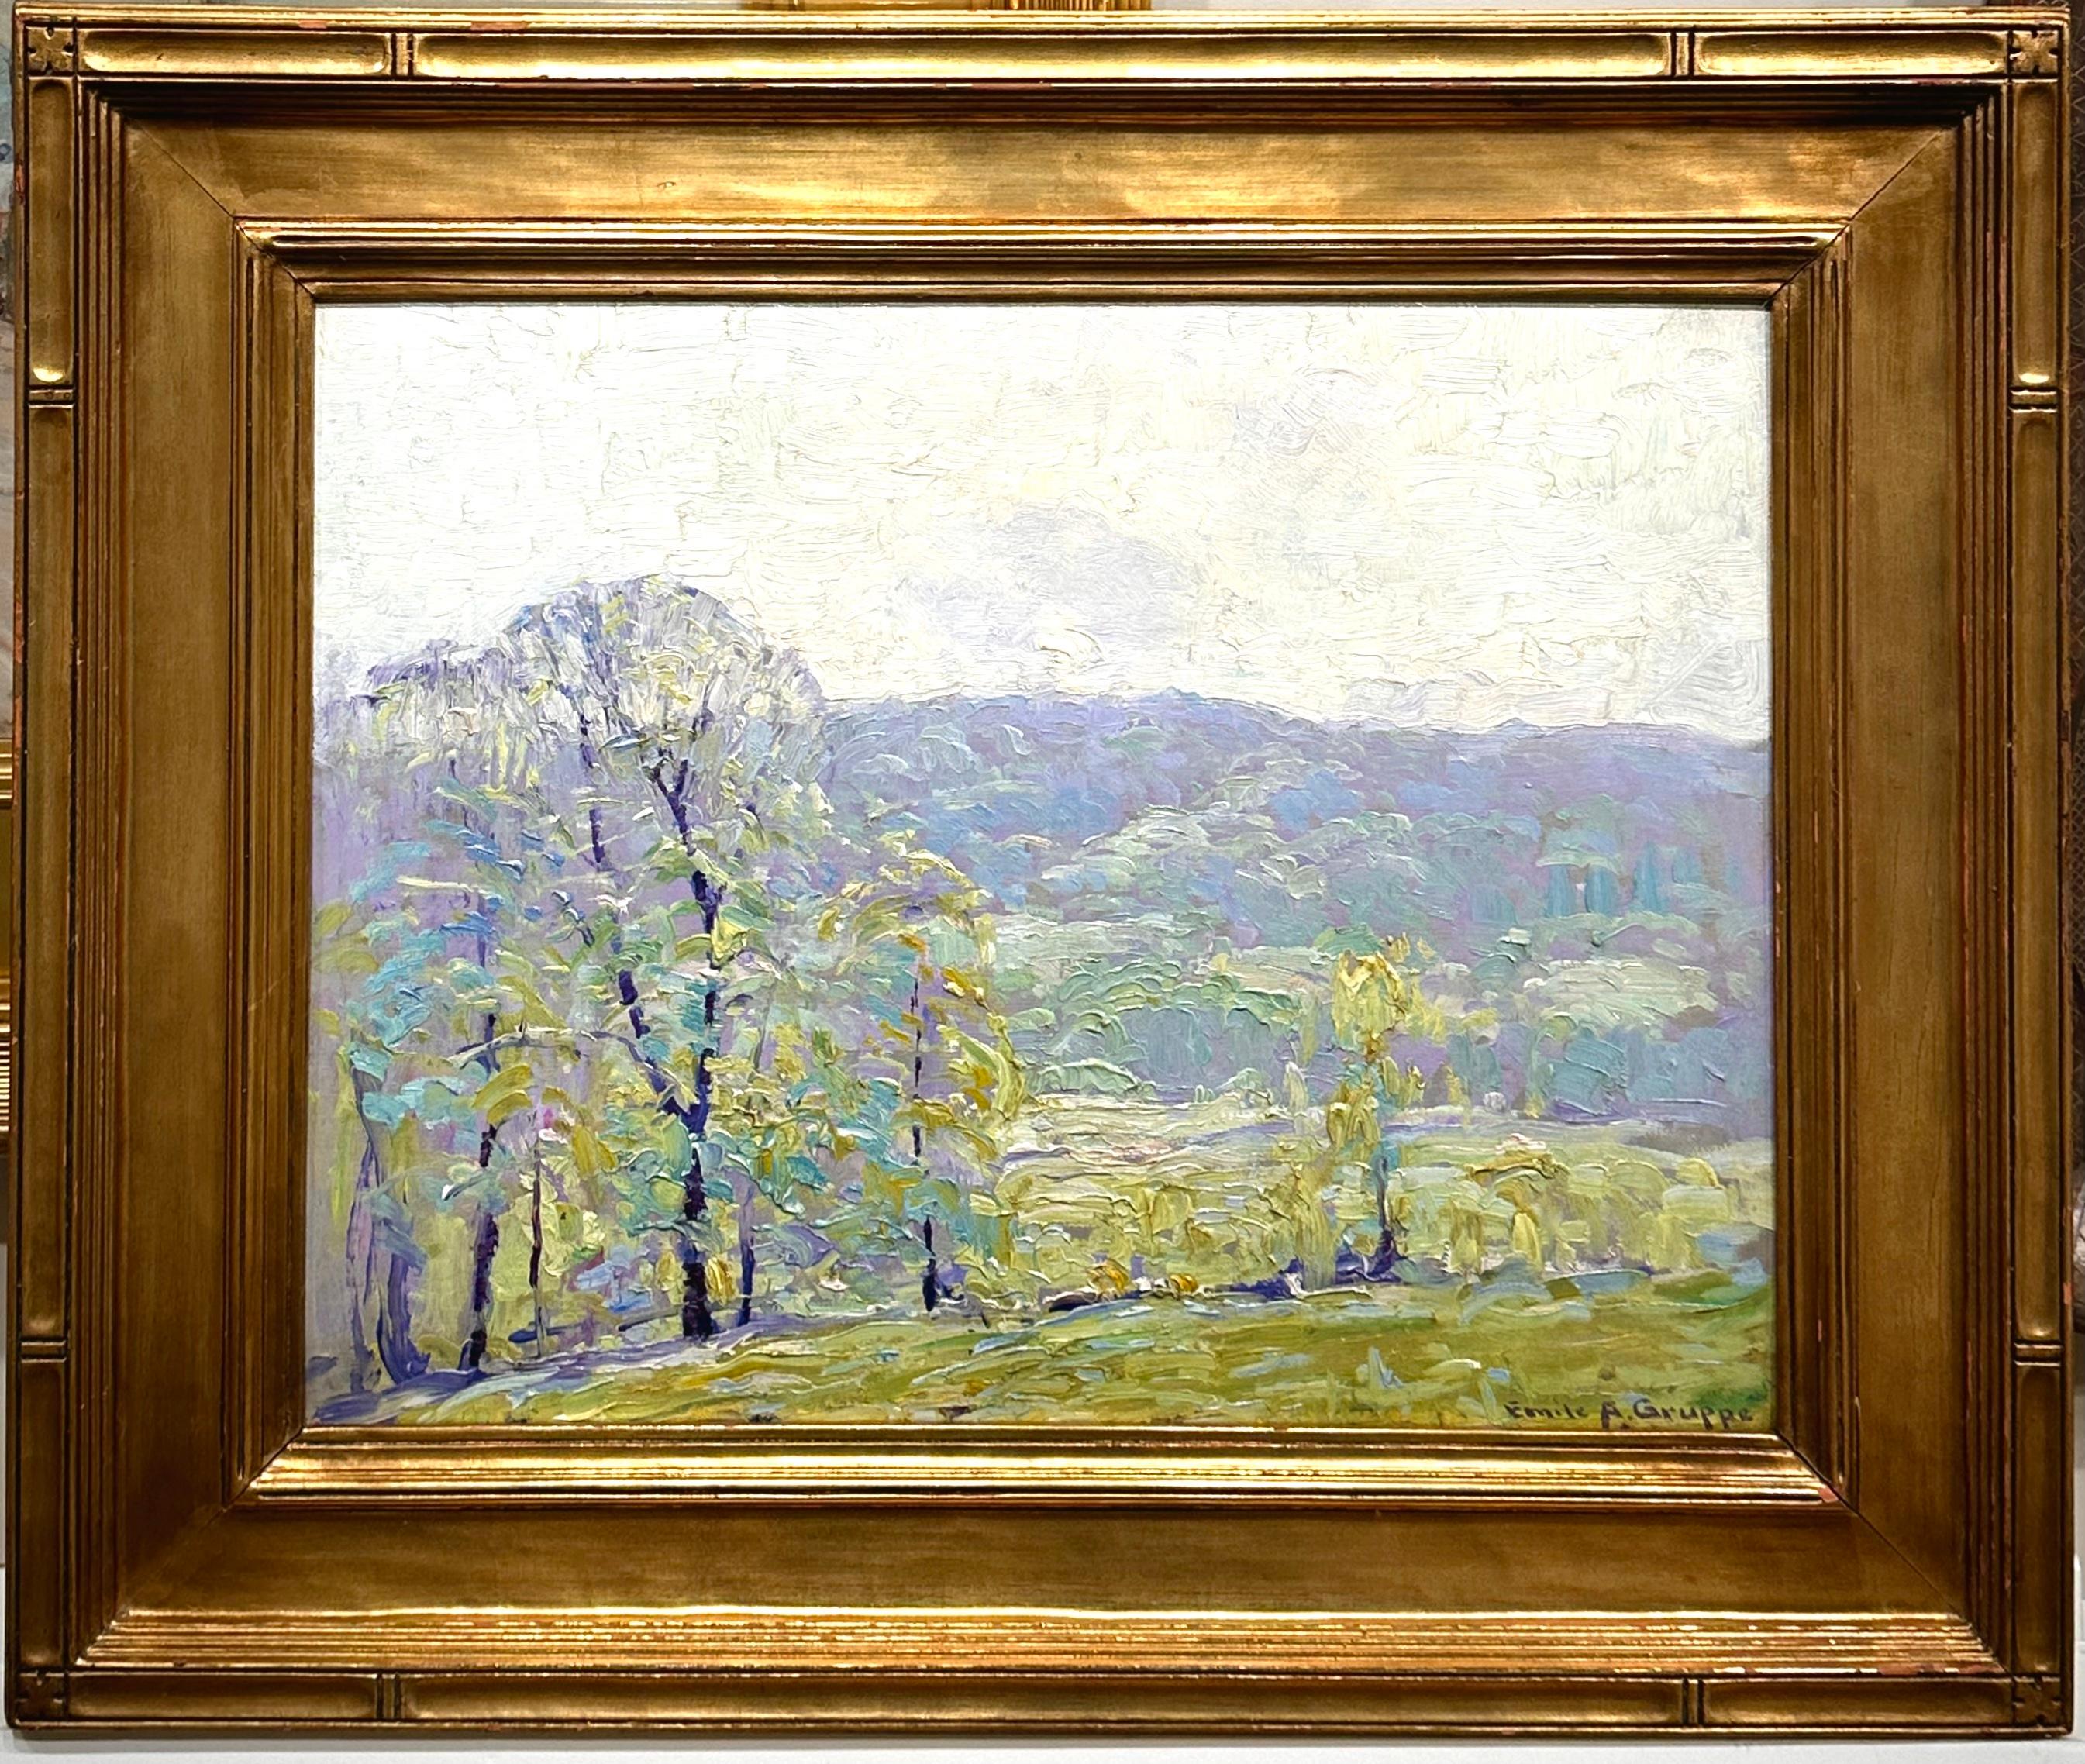 „Frühling“ – Impressionistisches, impressionistisches Landschaftsgemälde der Cape Ann School Master – Painting von Emile Gruppe